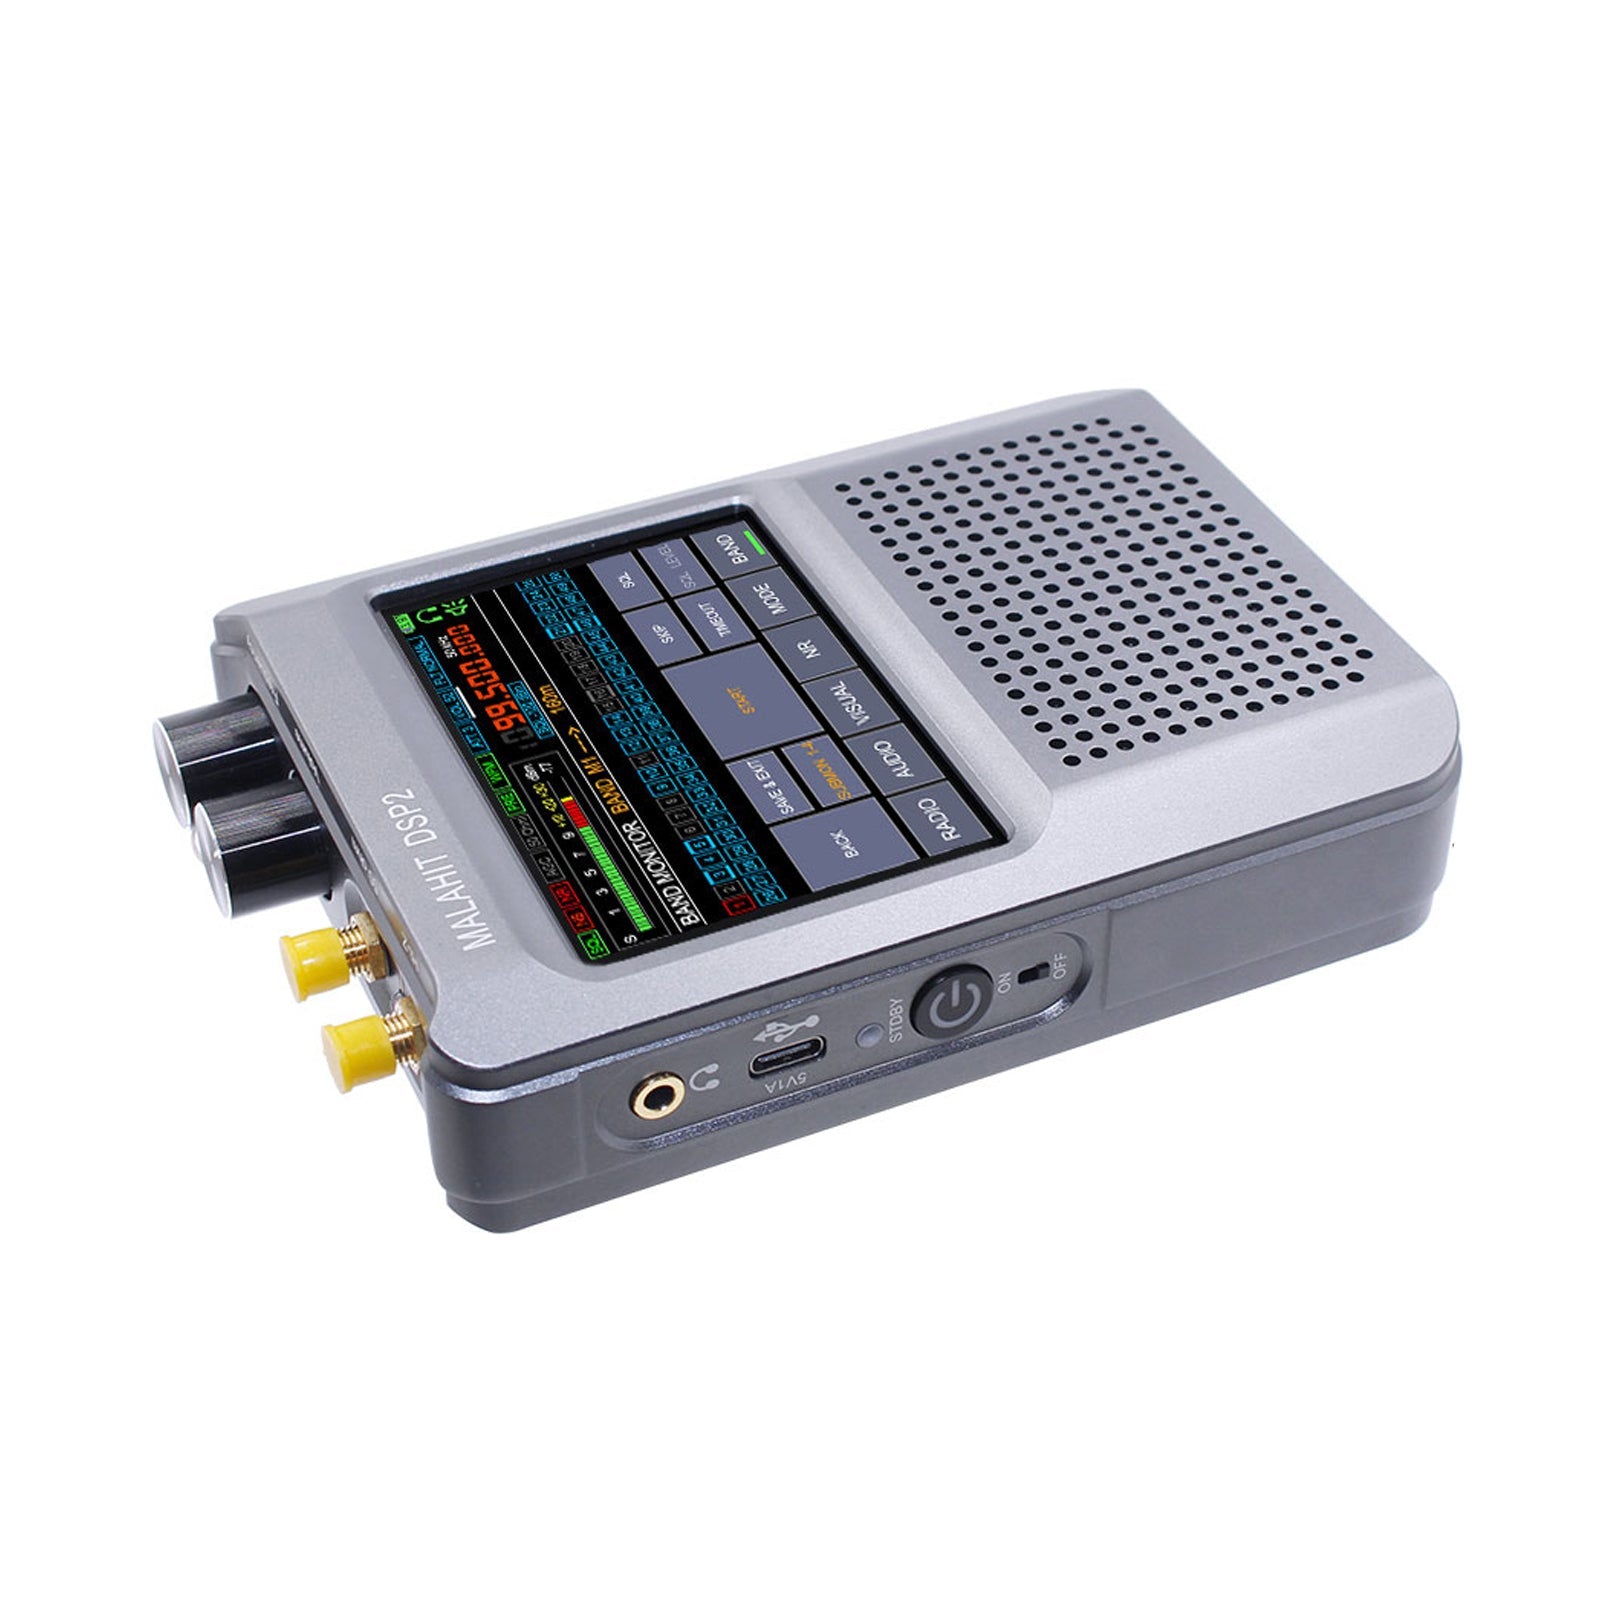 Firmware autorizzato originale 2.30 Radio ricevitore Malahit-DSP2 di seconda generazione